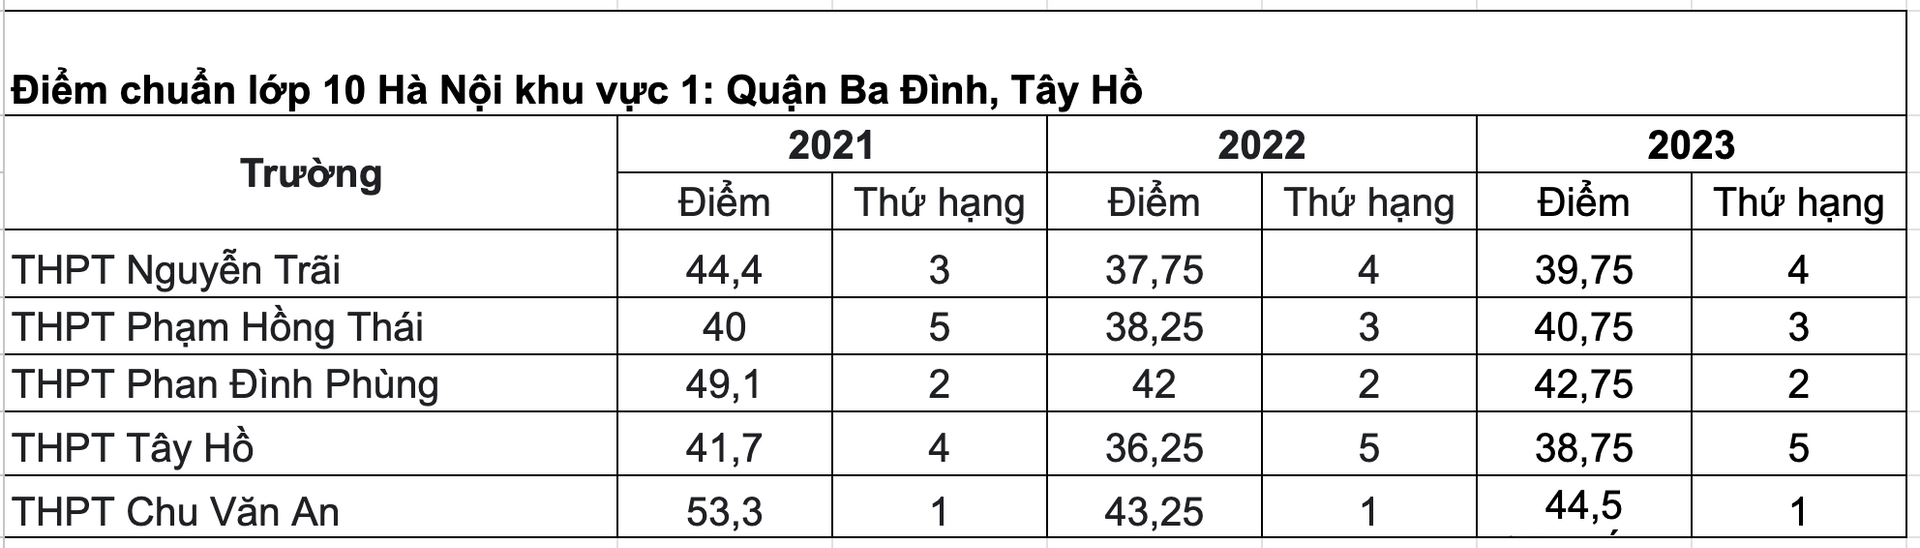 Điểm chuẩn TUYỂN SINH LỚP 10 các trường của Hà Nội 3 năm gần đây- Ảnh 2.